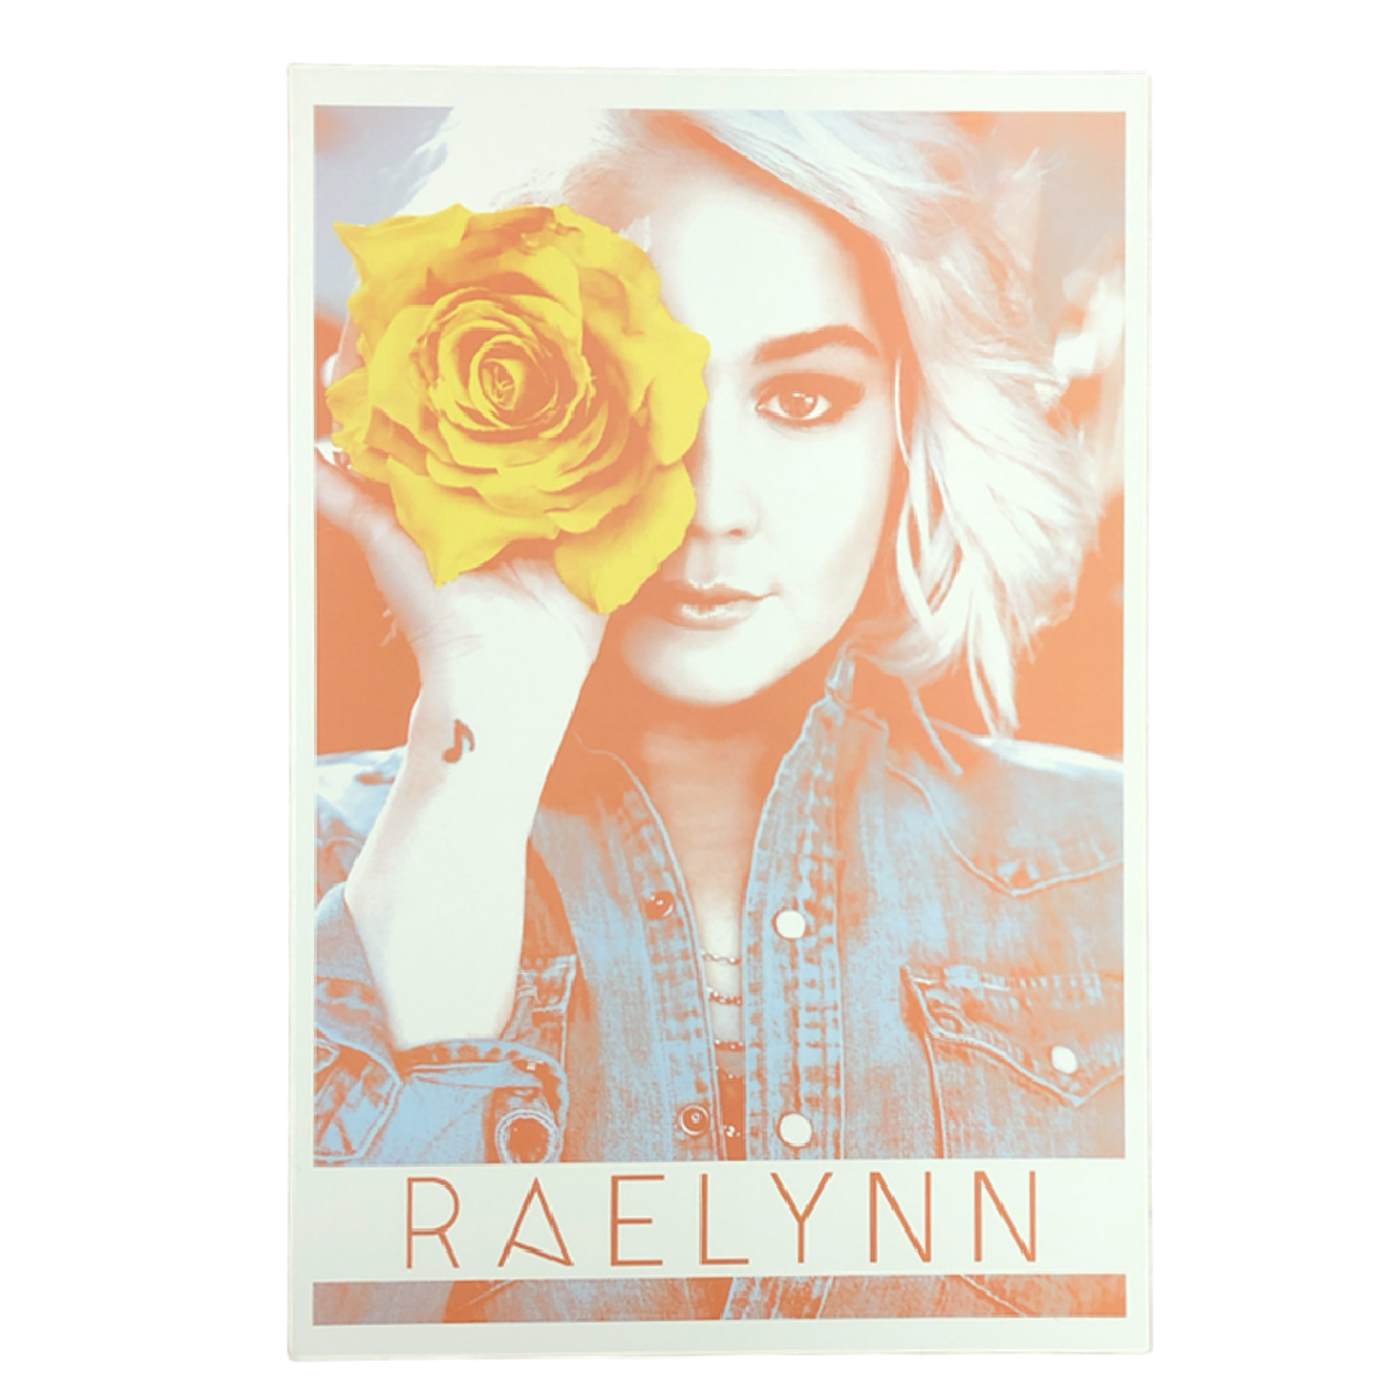 RaeLynn SIGNED Poster